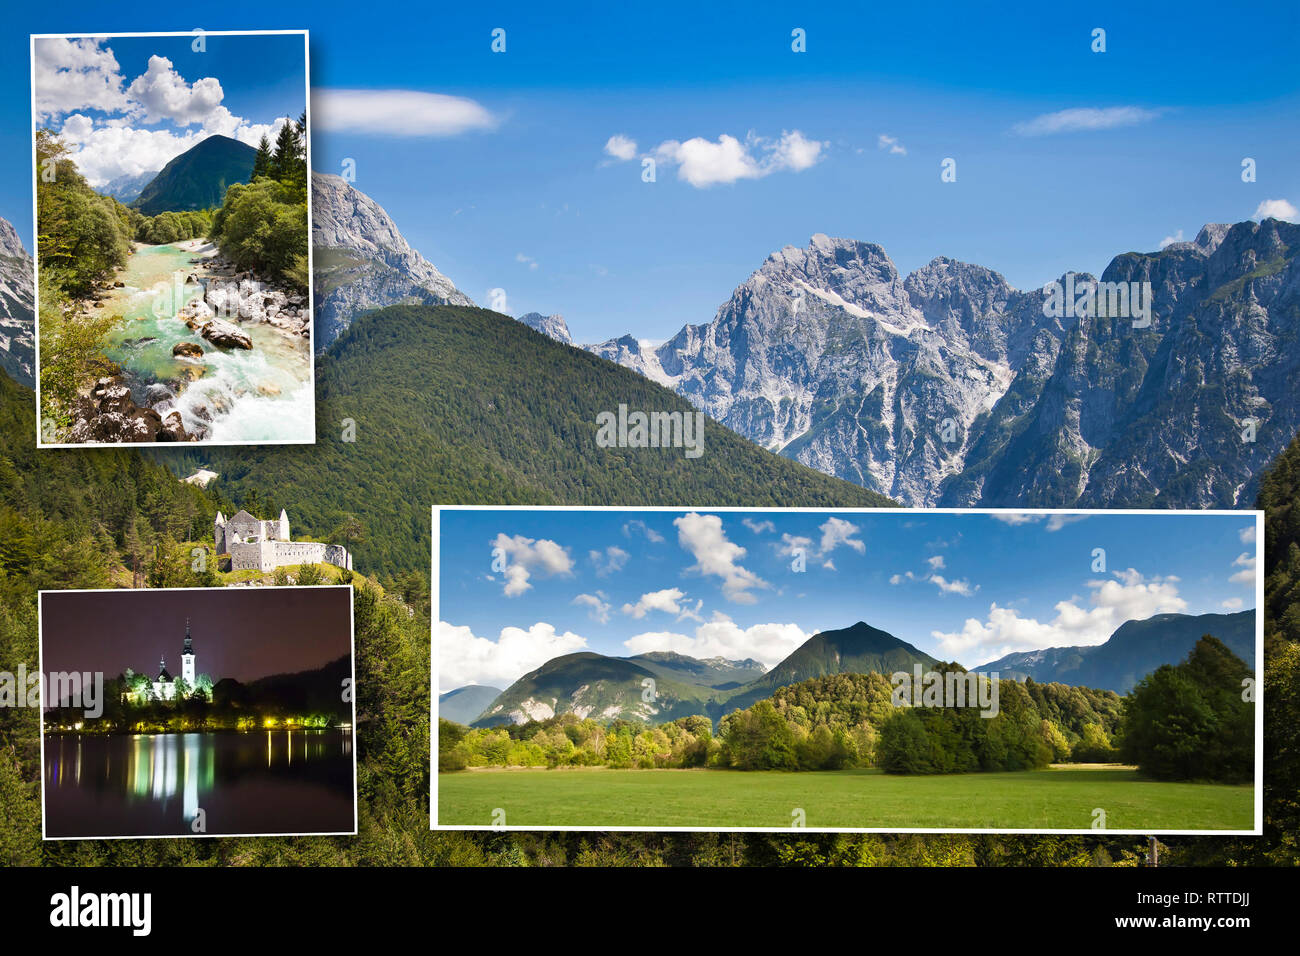 Die Julischen Alpen in Slowenien sind ein Gebirgszug der südlichen Kalkalpen. Auf der linken Seite oben: Fluss Soca, links unten: Bled See und Kirche Insel Stockfoto